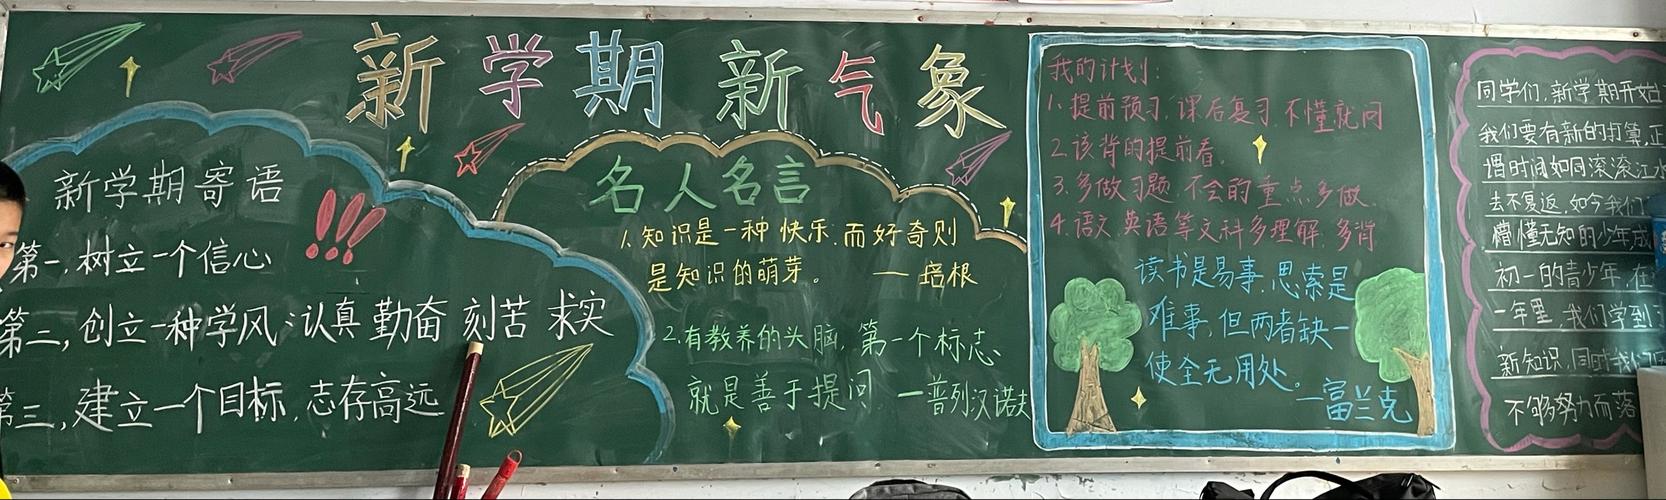 新学期 新起点邢台三中教育集团西校区初一年级新学期黑板报展